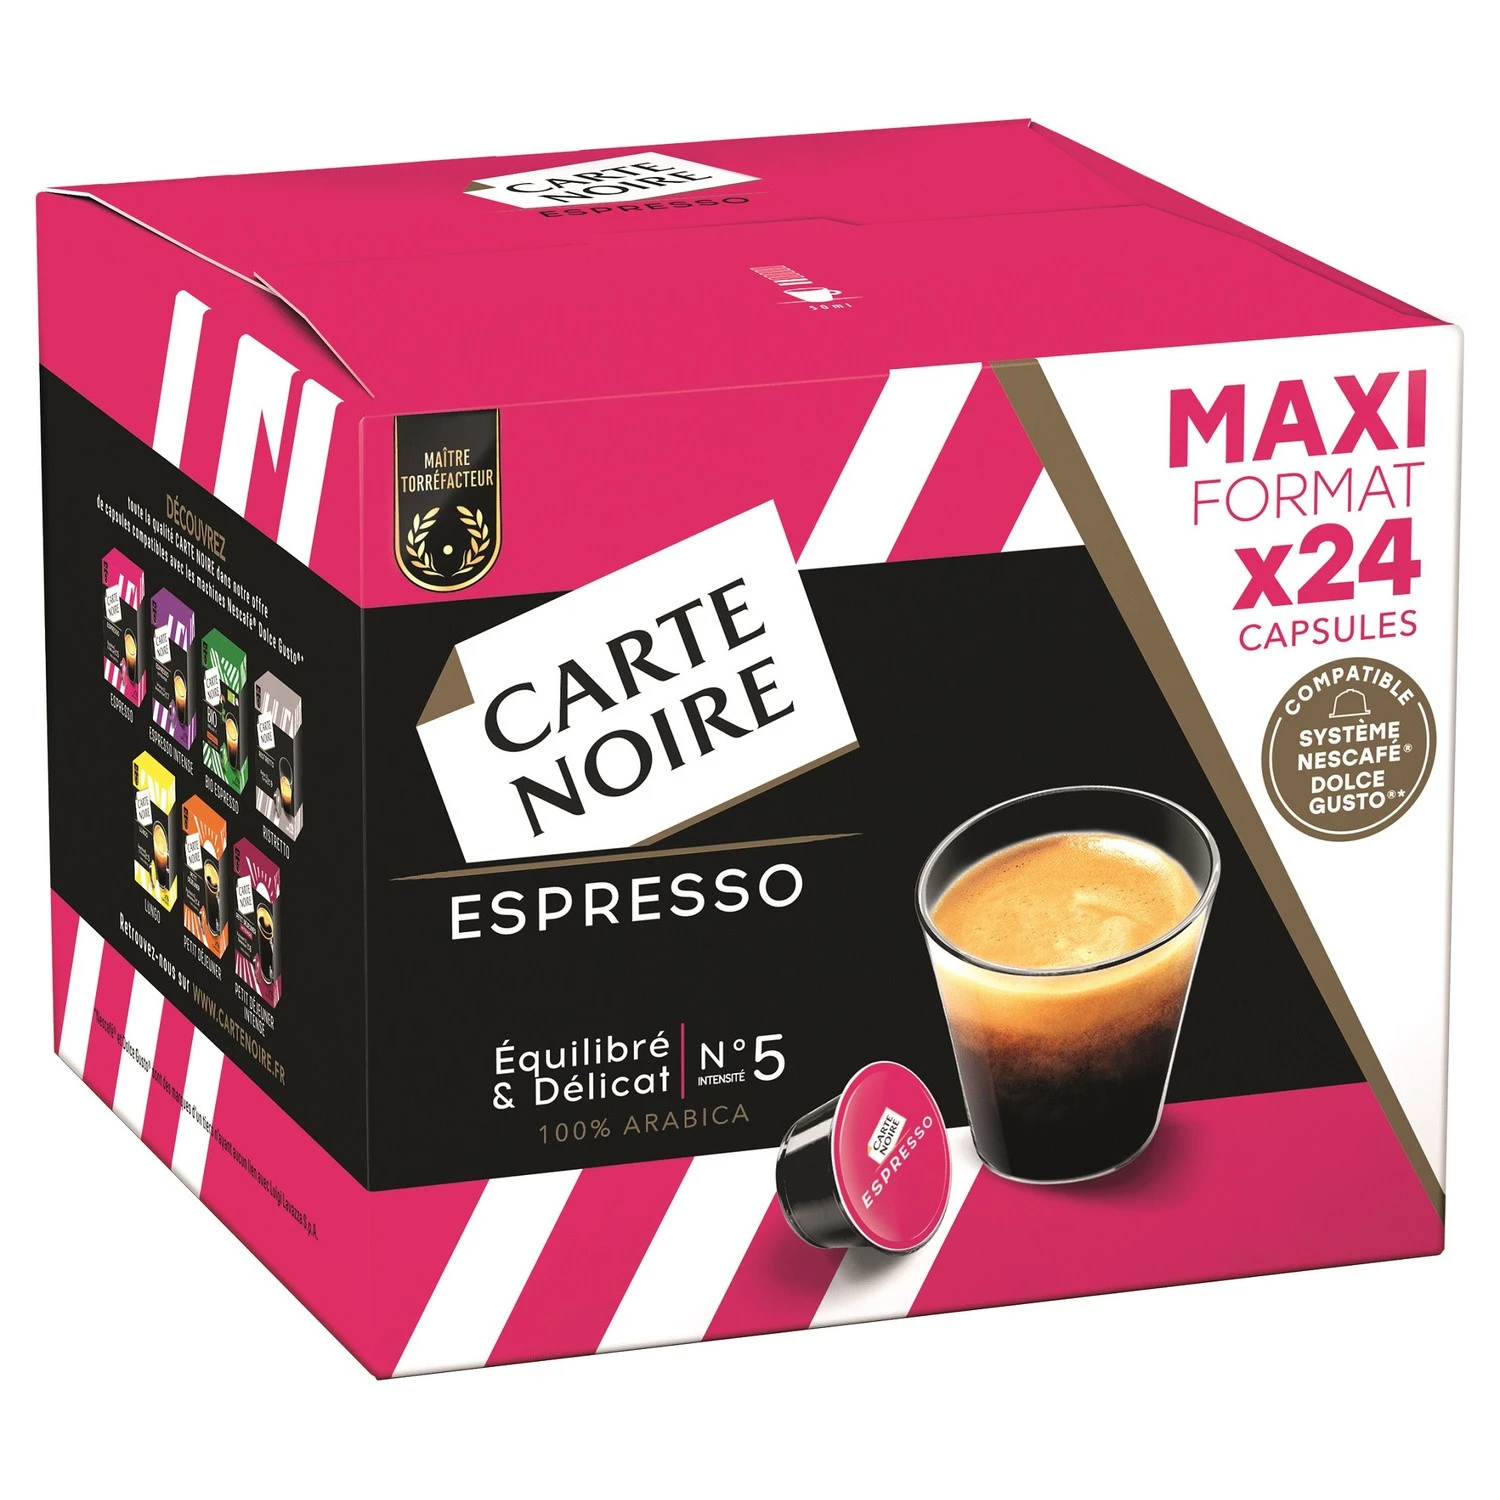 Cn Caps Dgc Espresso 192 جم